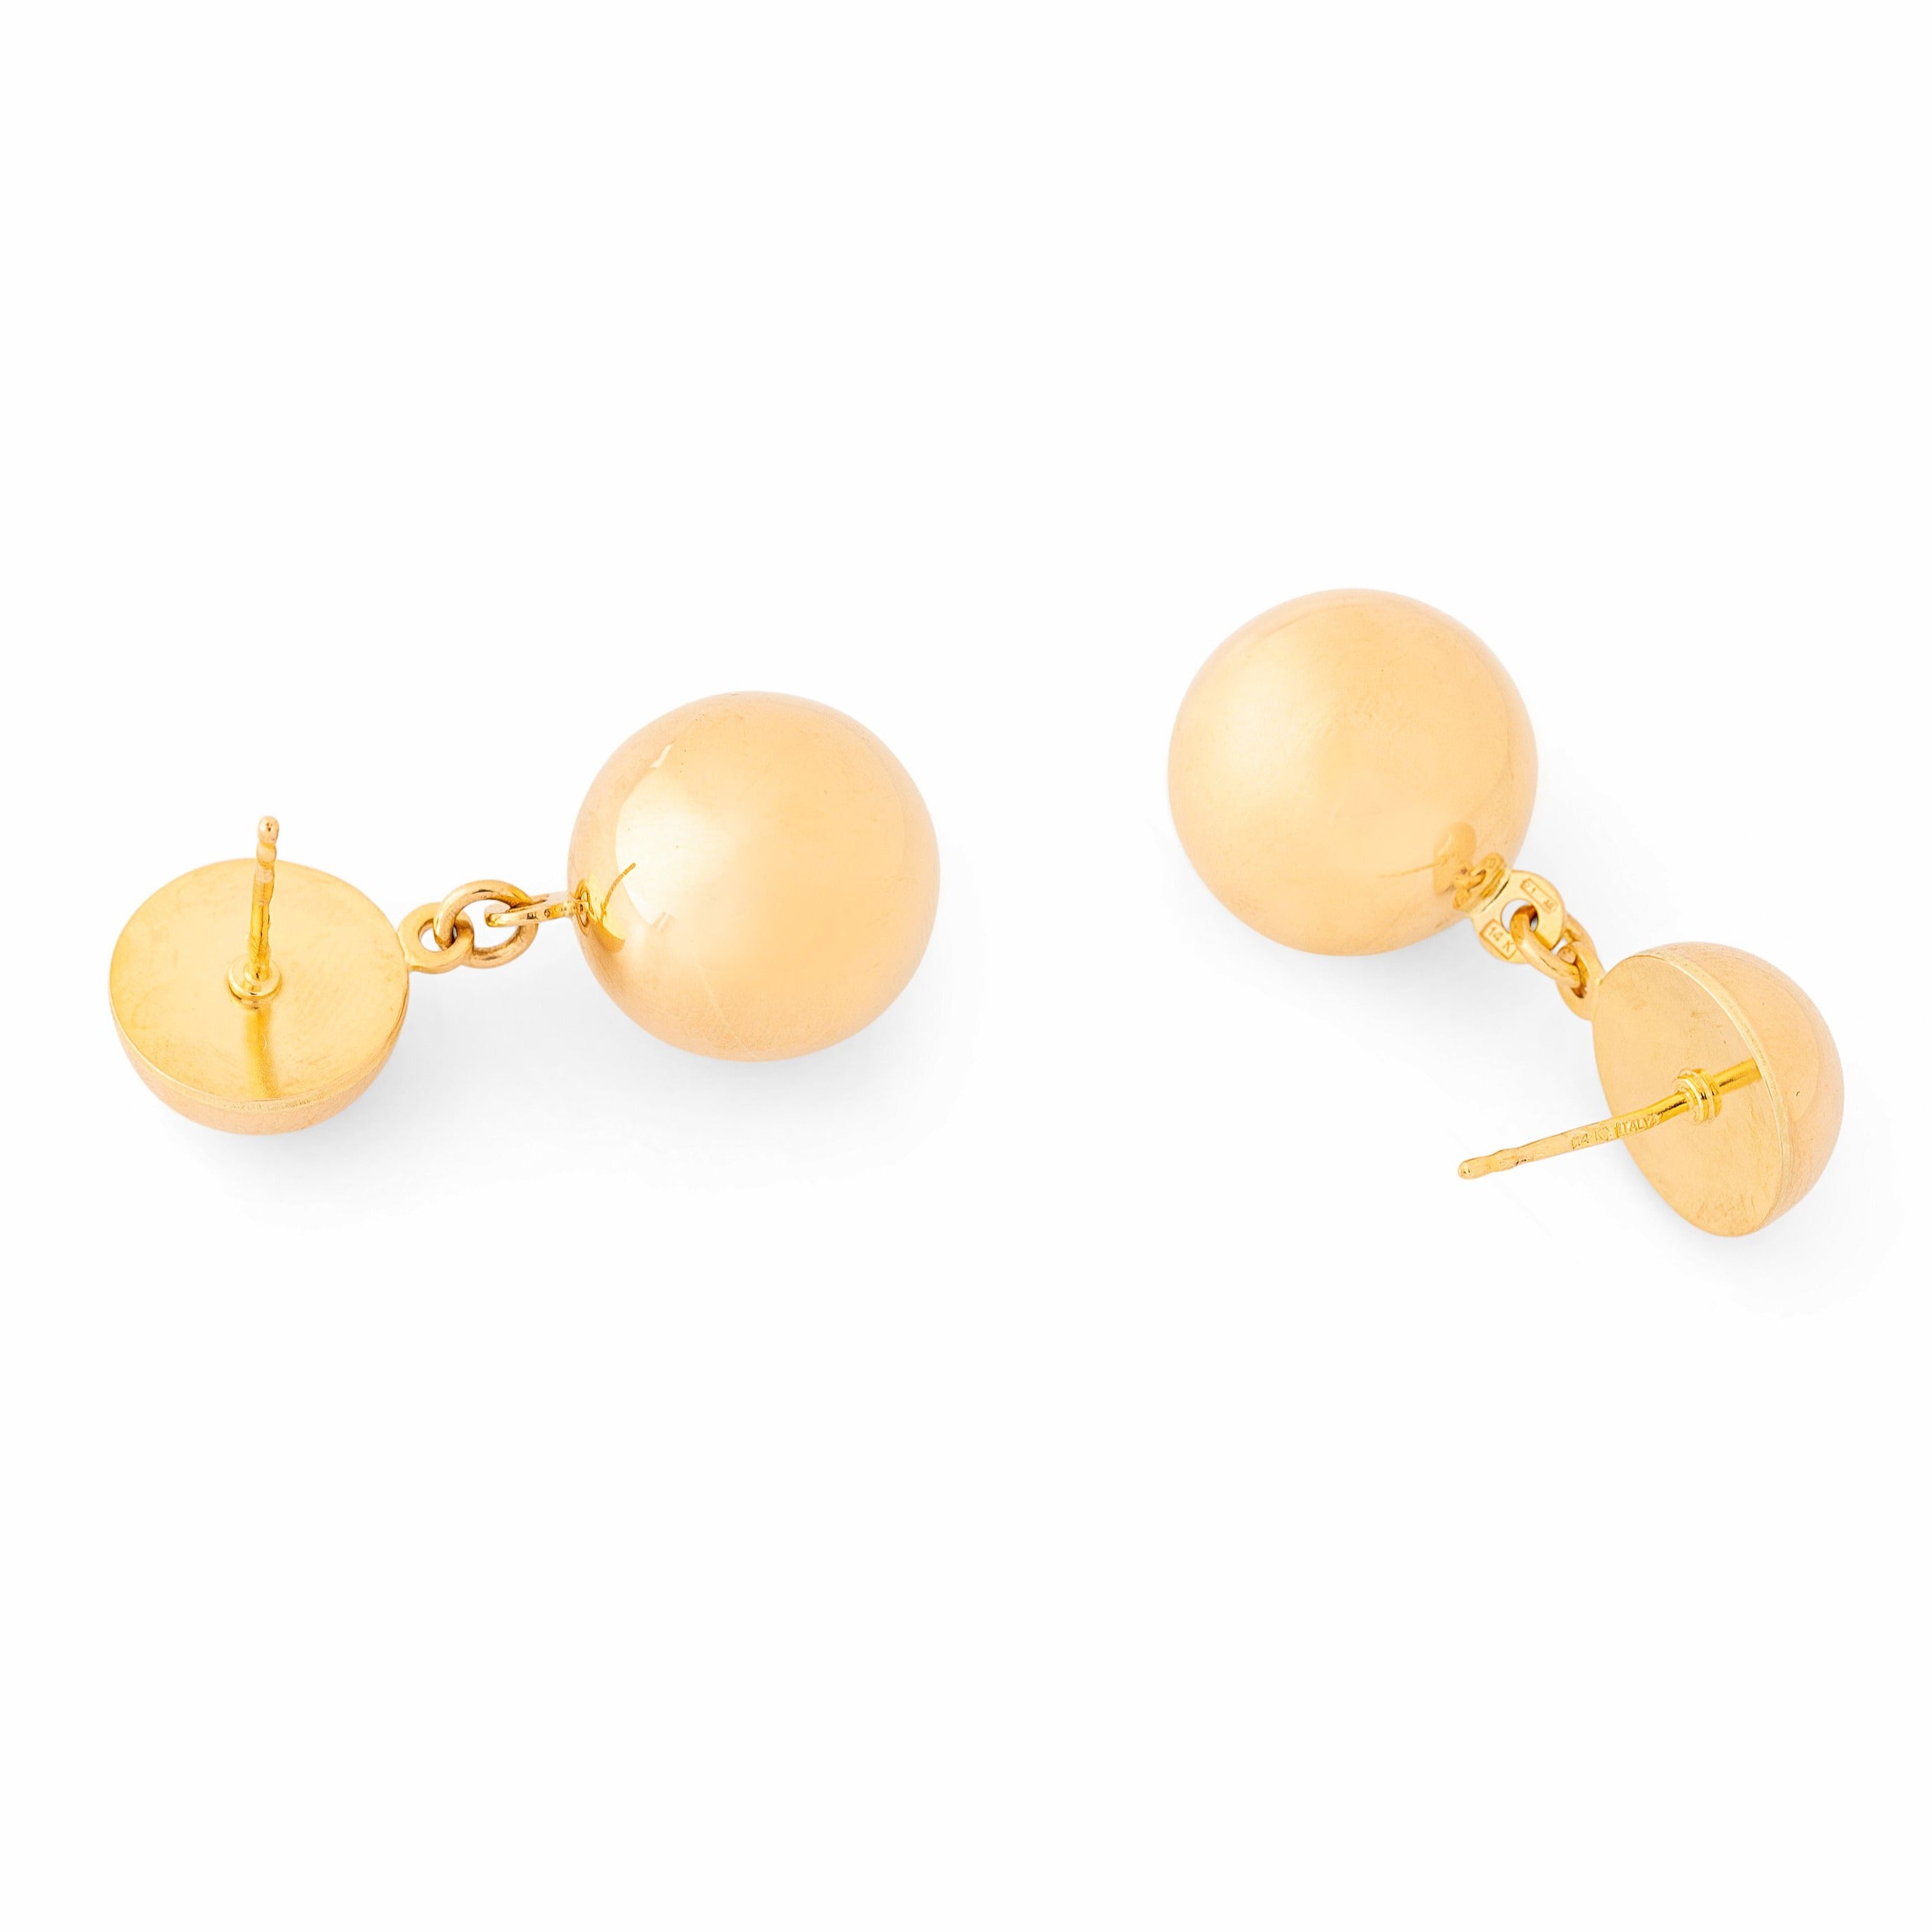 Italian Double Ball 14k Gold Earrings